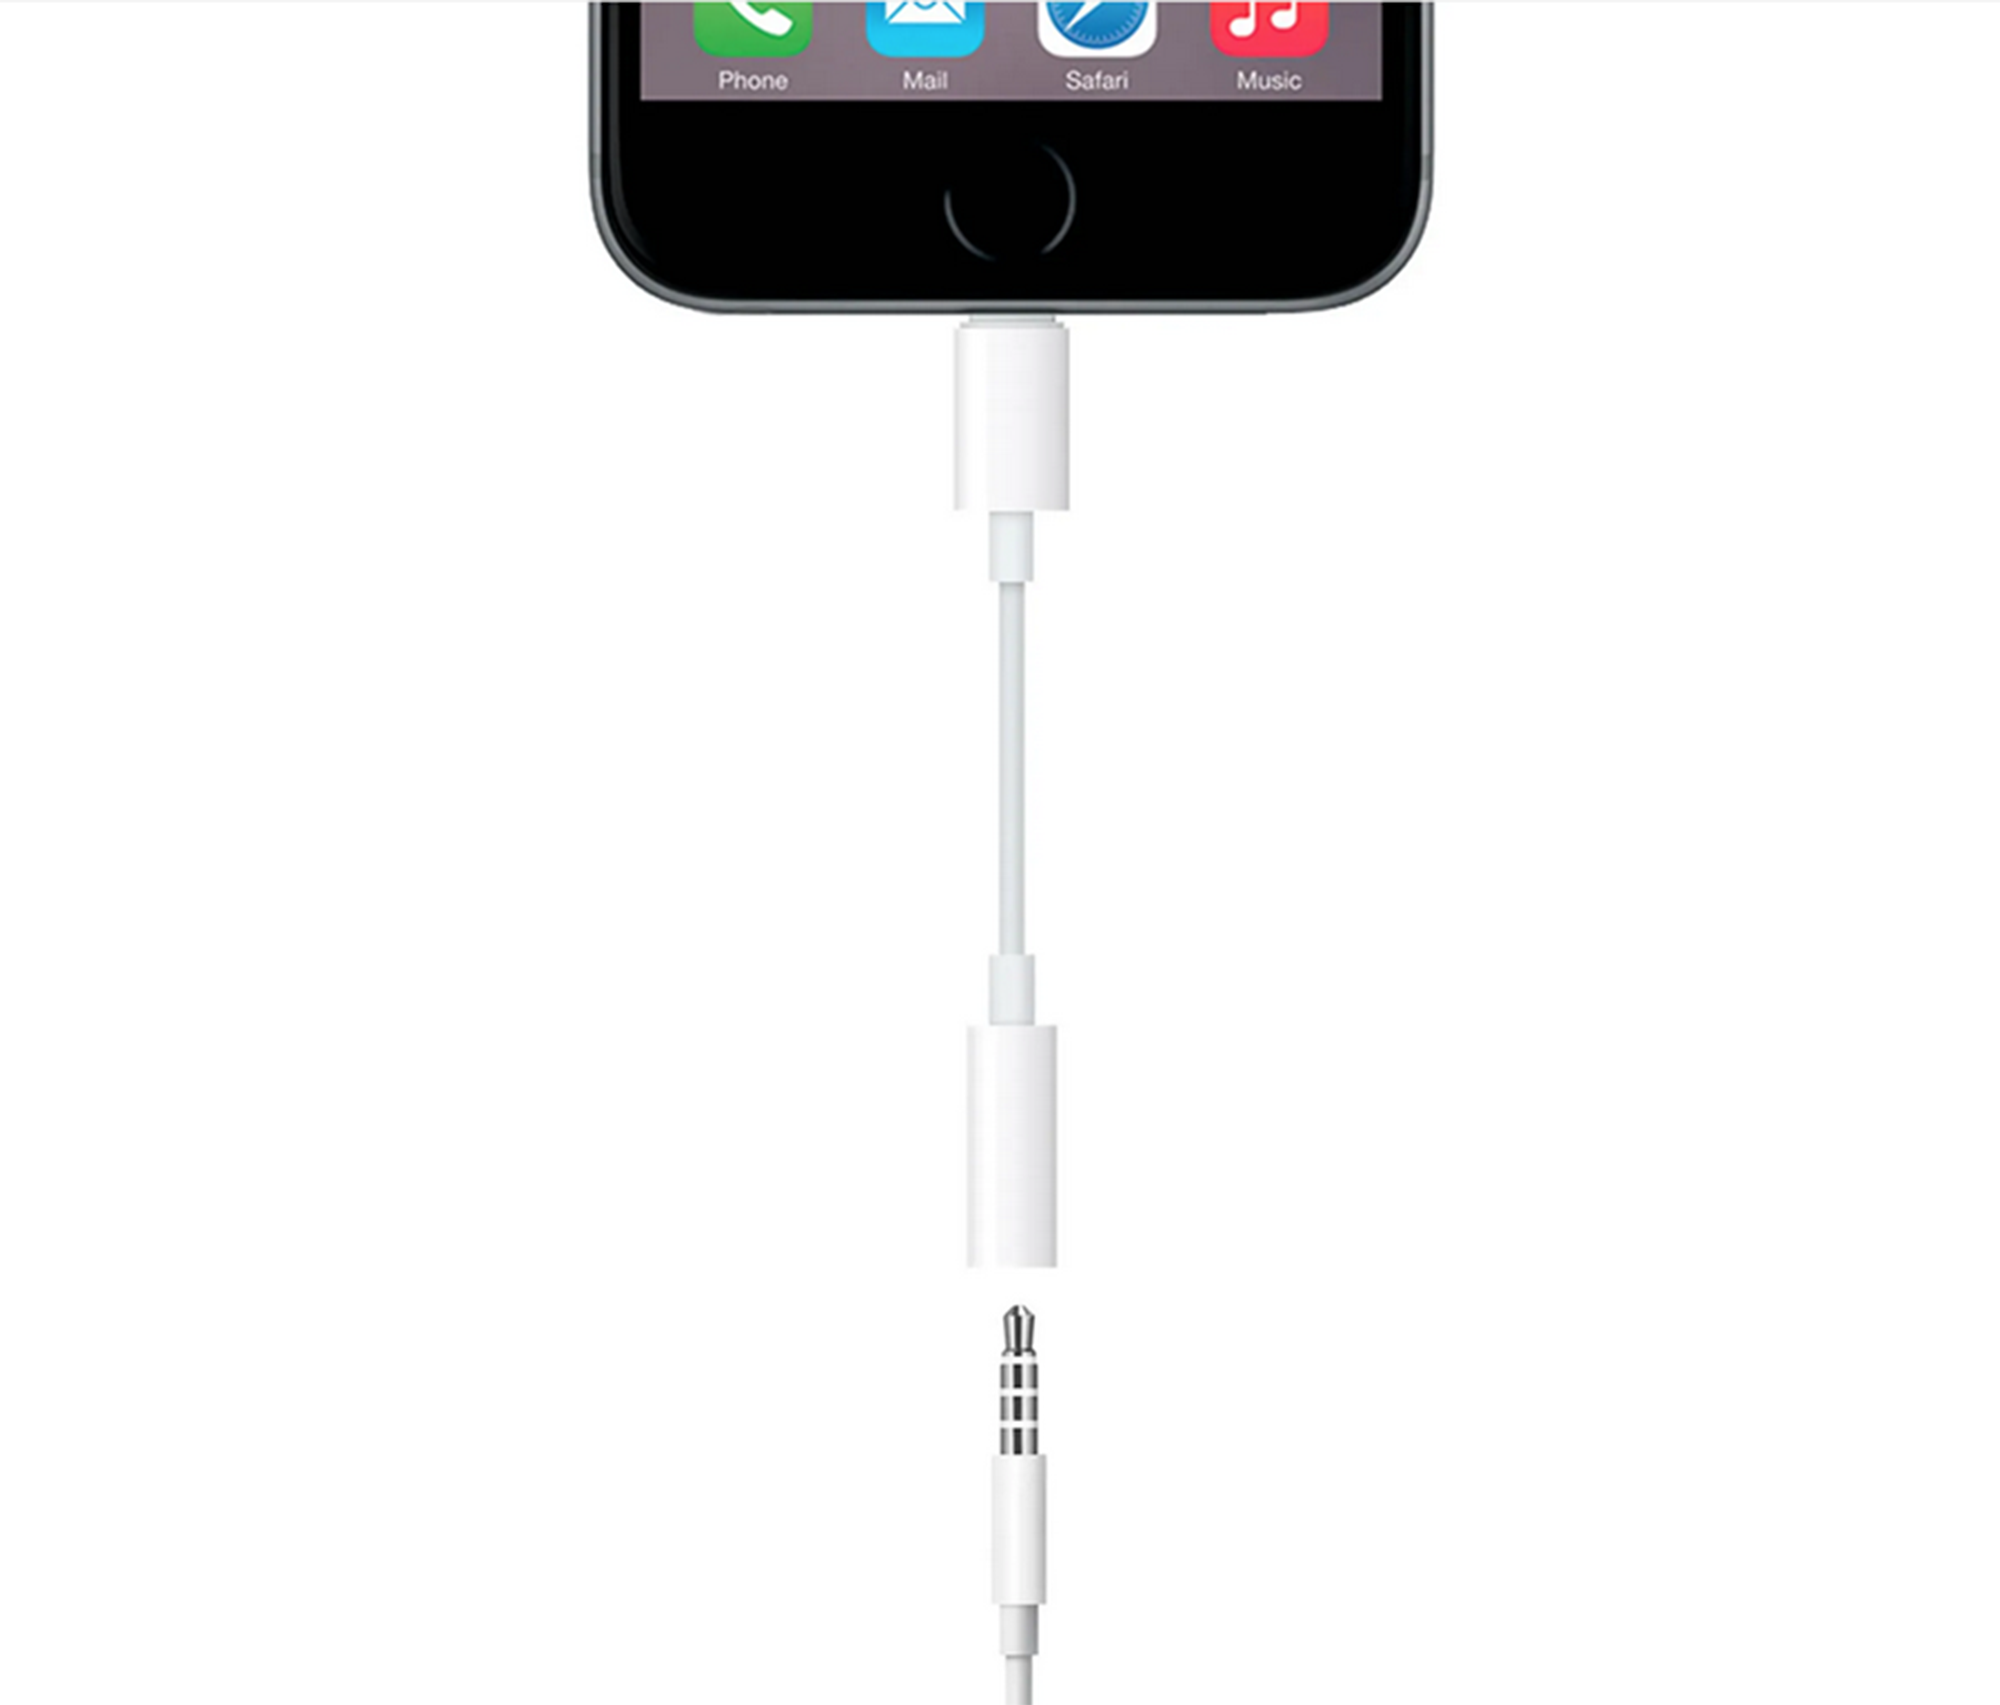 Apple Lightning auf 3,5mm-Kopfhöreranschluss Adapter